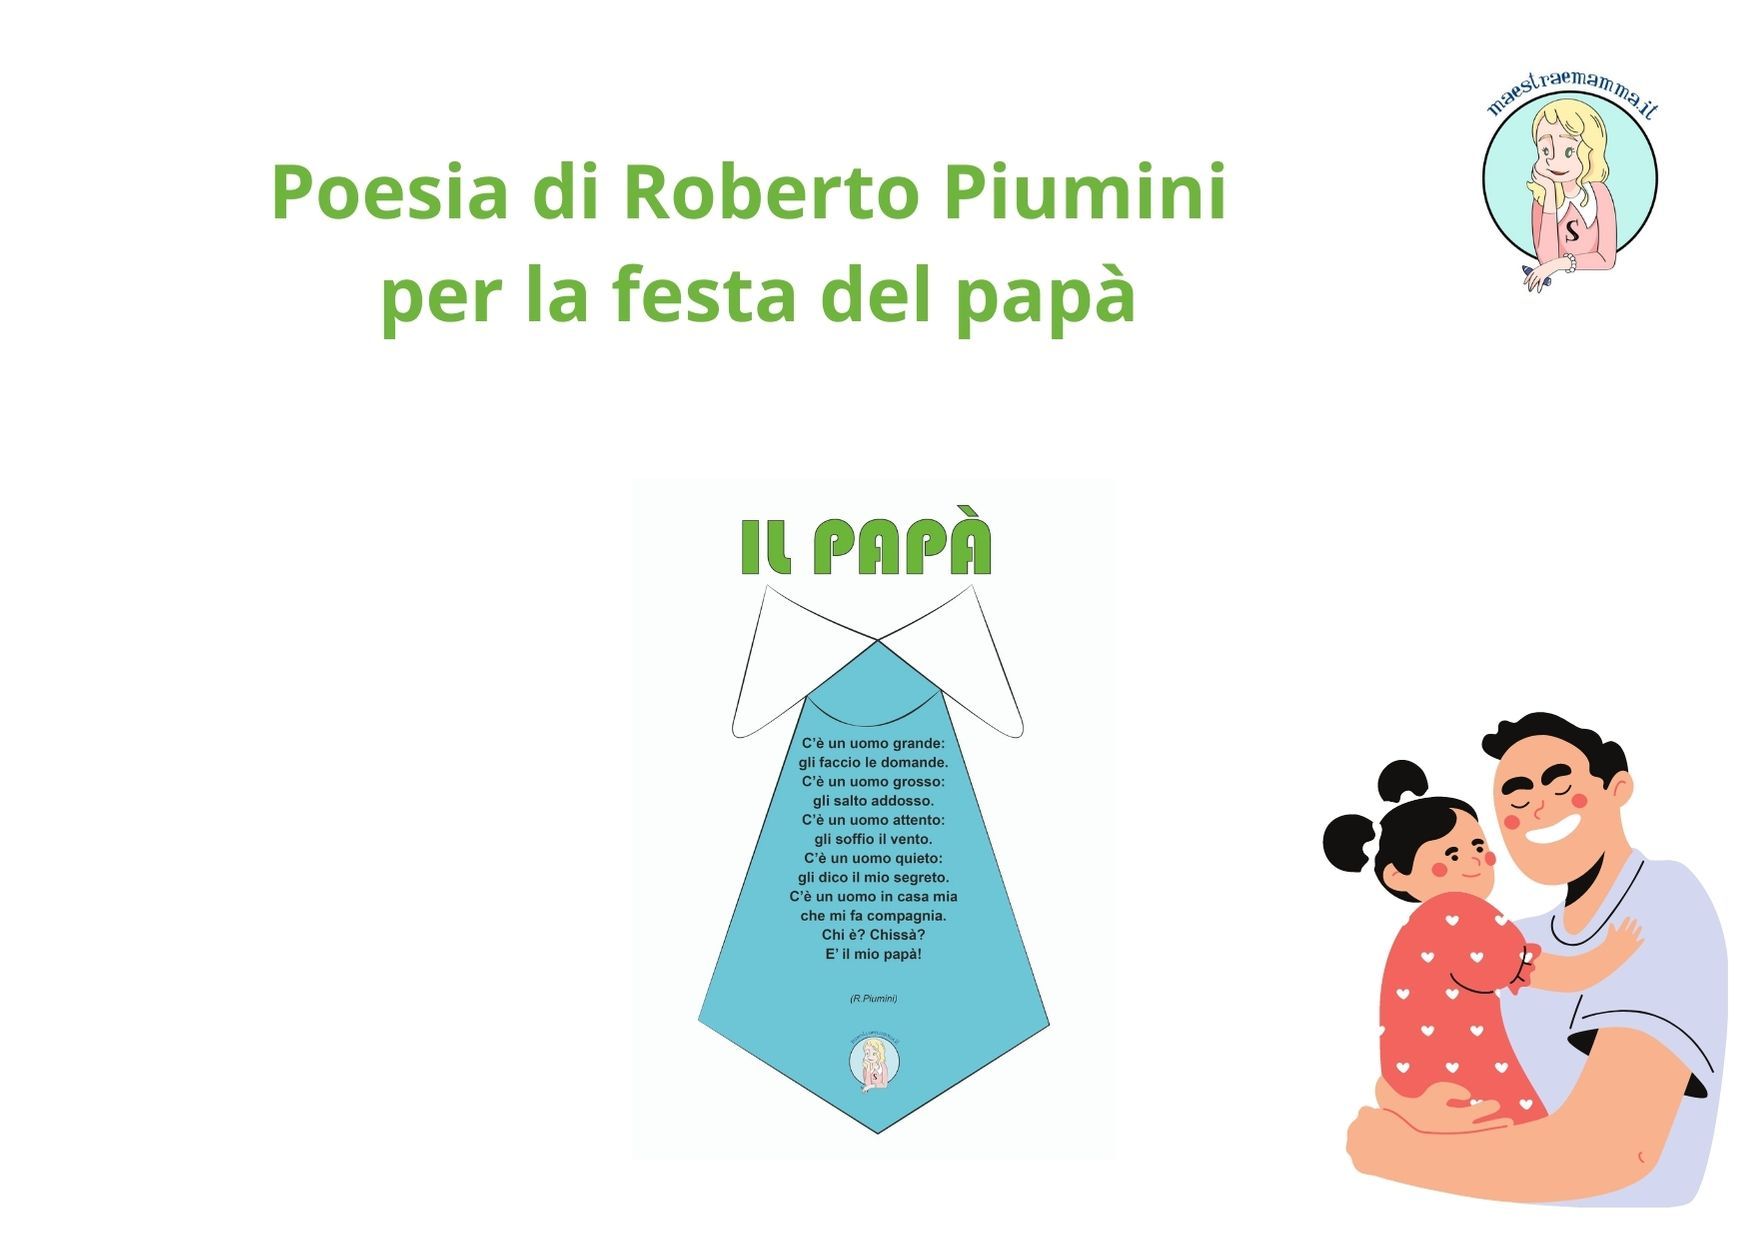 Poesia di Roberto Piumini per la festa del papà